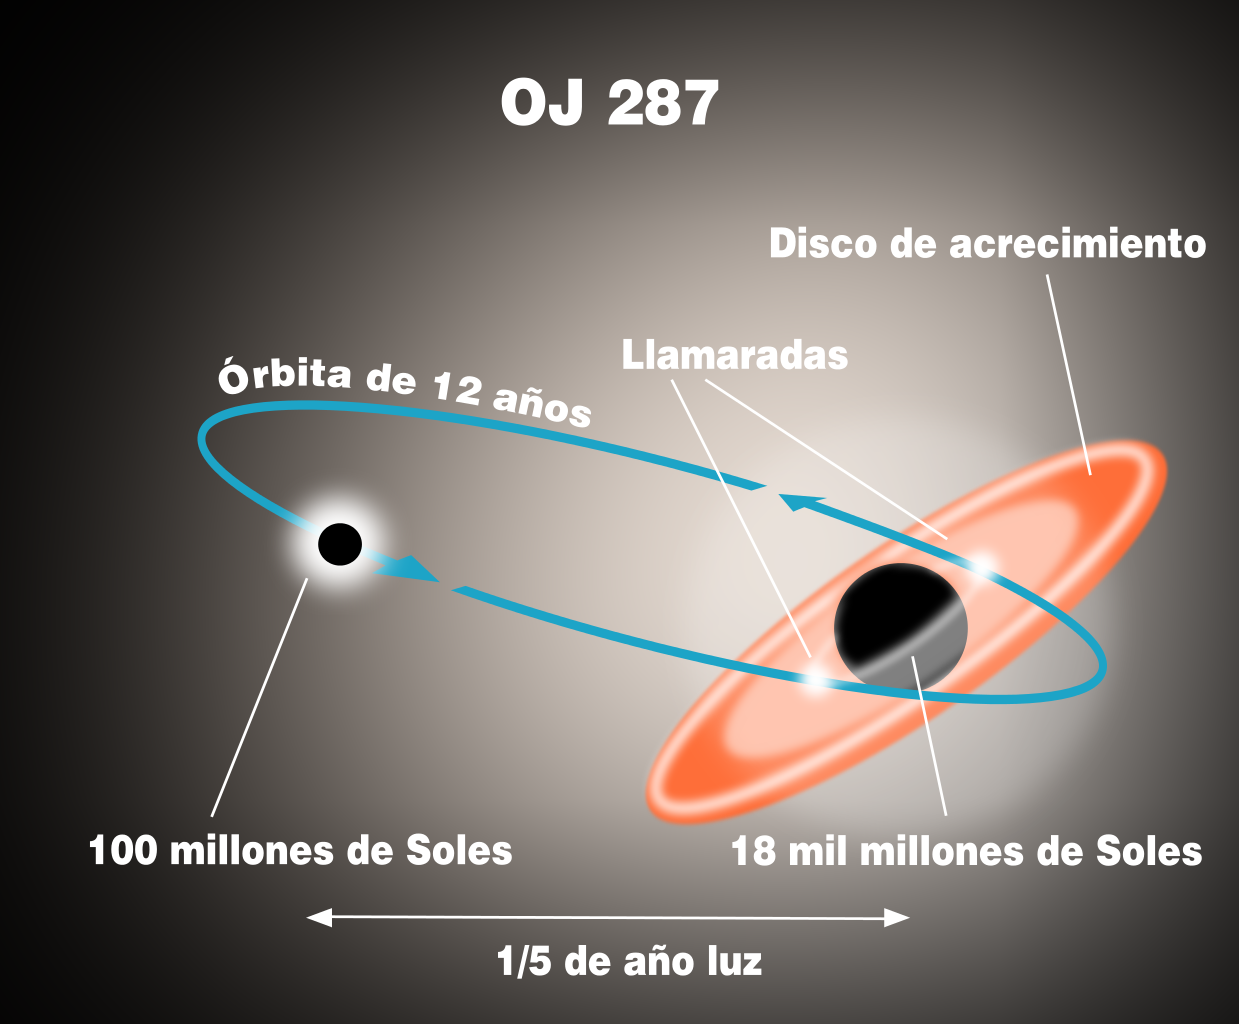 黑洞——宇宙中最神秘的天体之一，它的质量有上限吗？